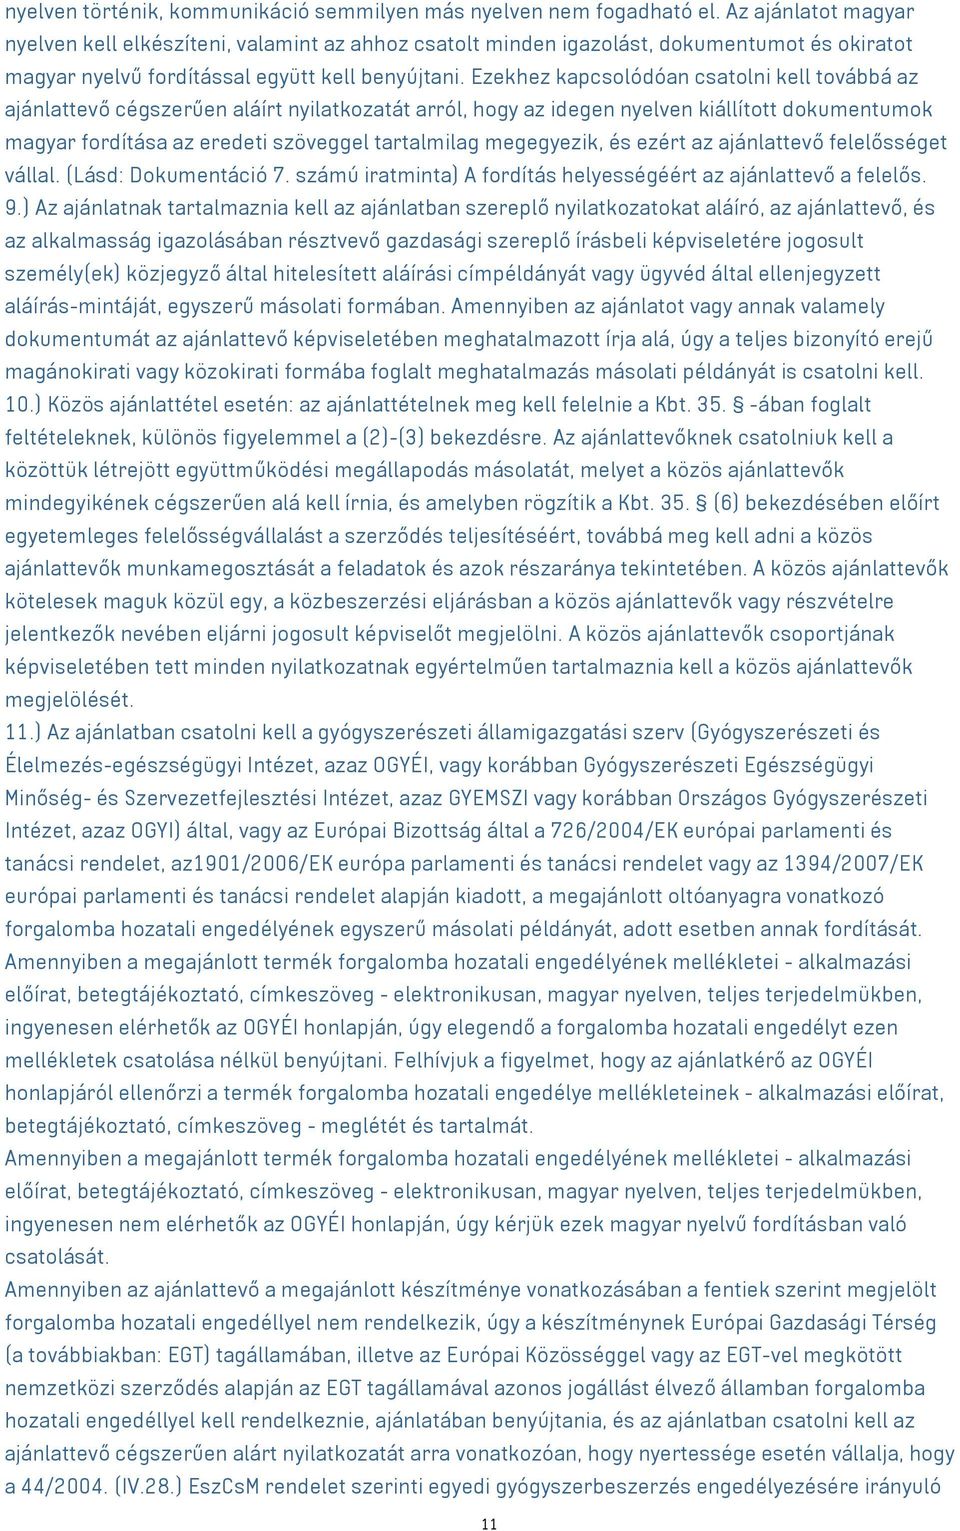 Ezekhez kapcsolódóan csatolni kell továbbá az ajánlattevő cégszerűen aláírt nyilatkozatát arról, hogy az idegen nyelven kiállított dokumentumok magyar fordítása az eredeti szöveggel tartalmilag